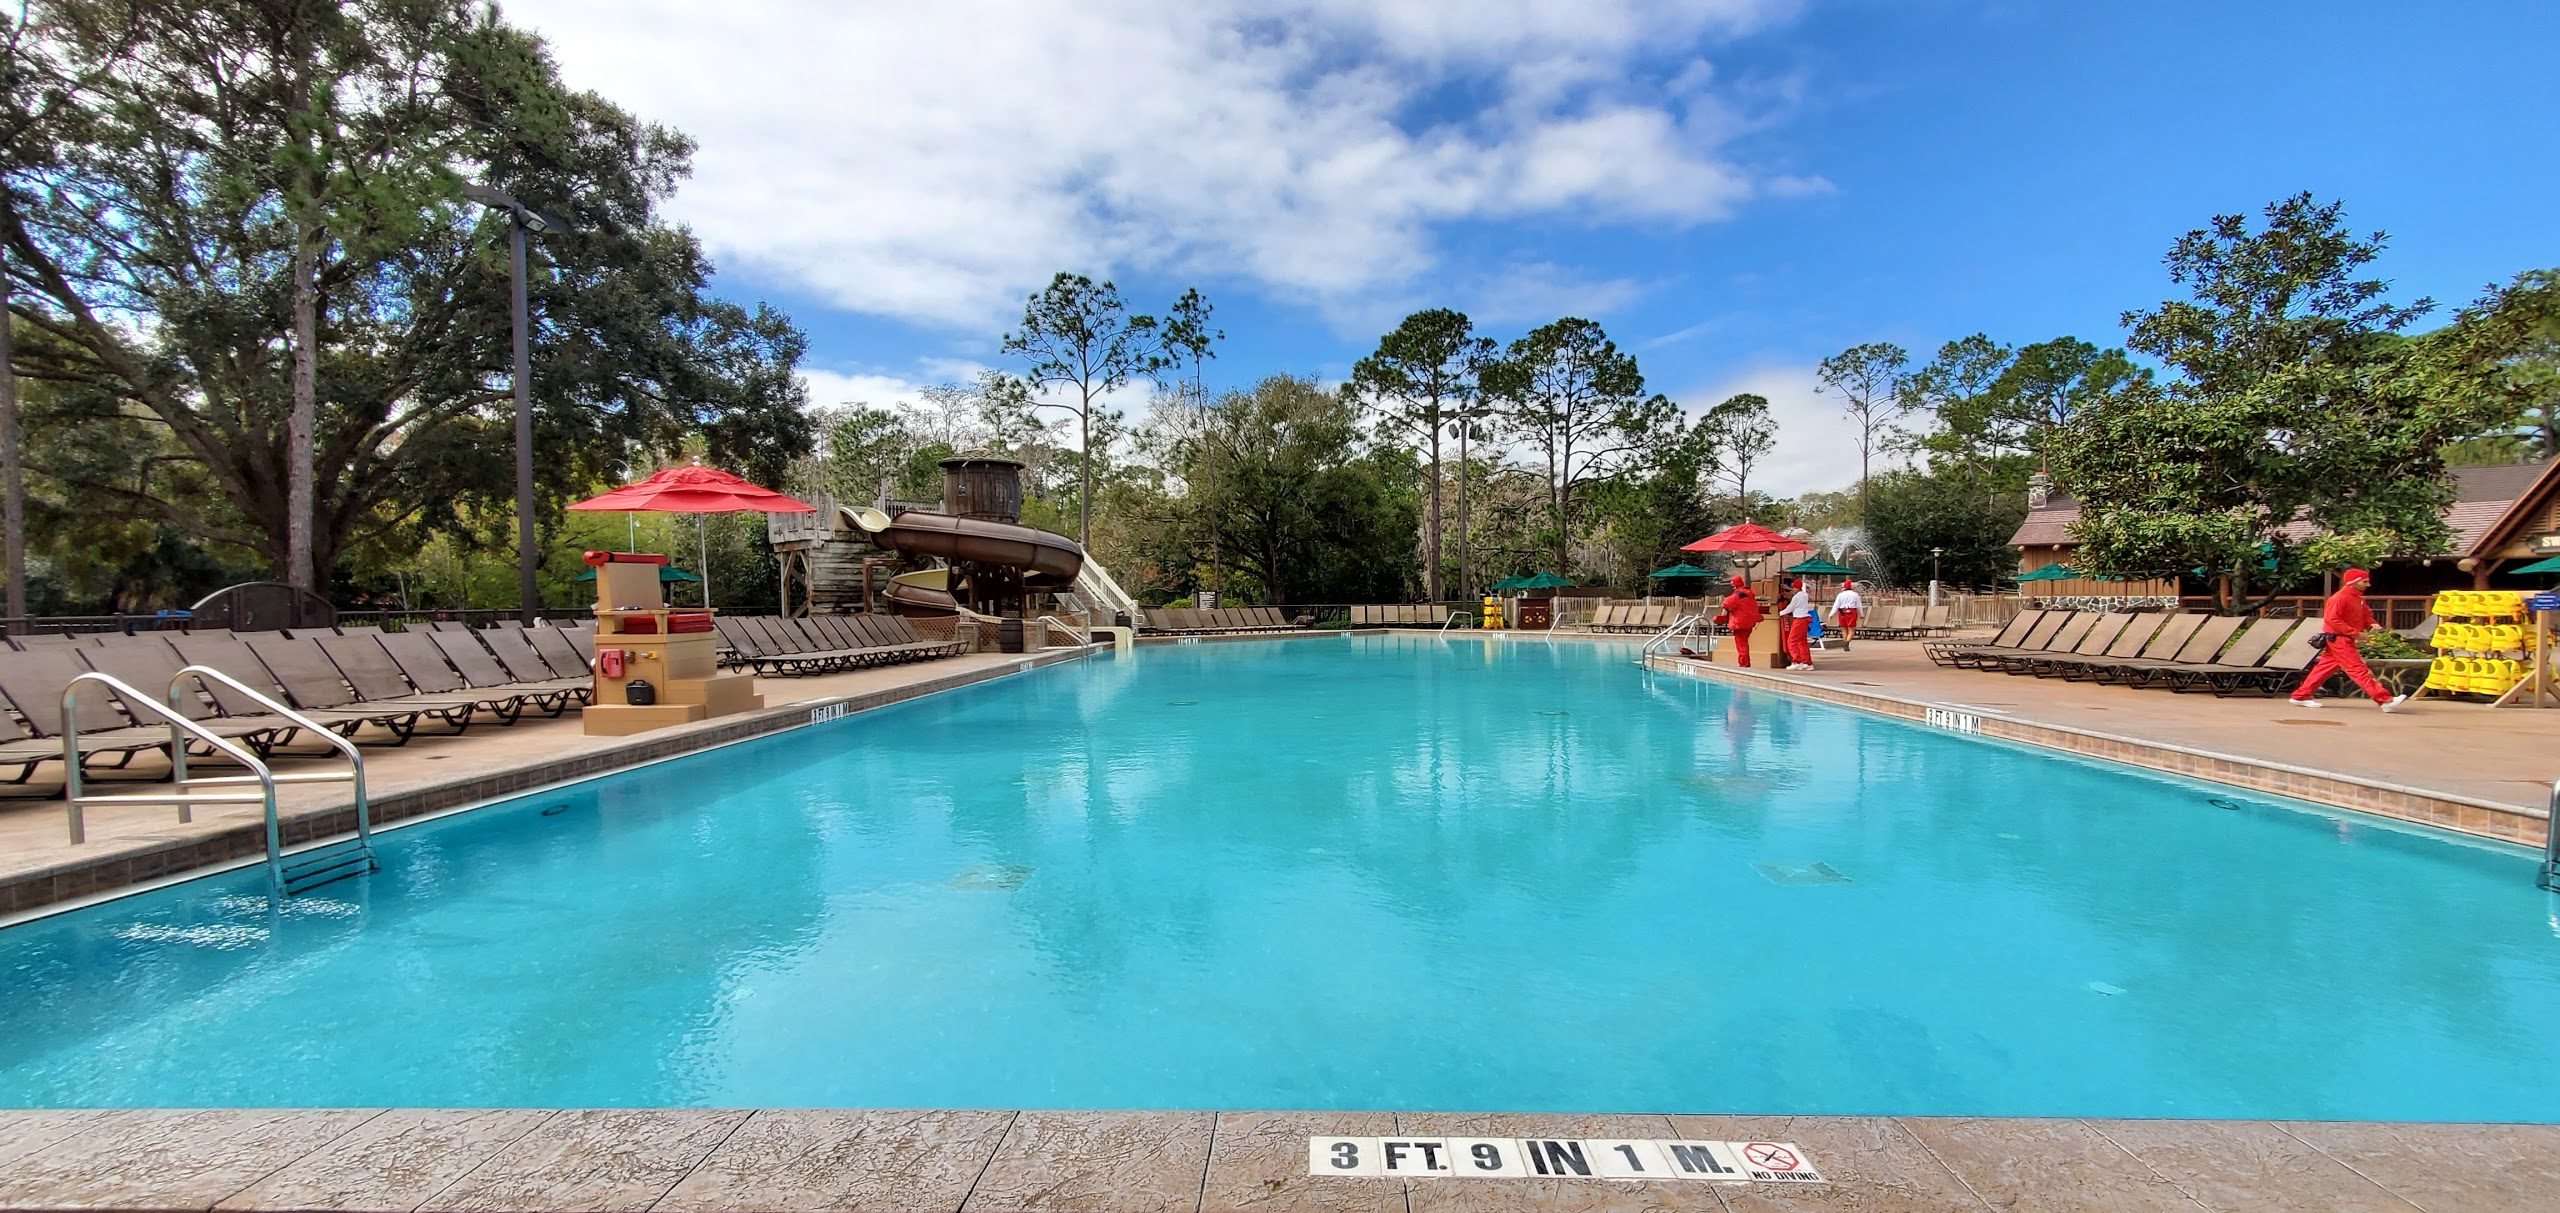 Pool at Disney's Fort Wilderness Resort closing for refurbishment